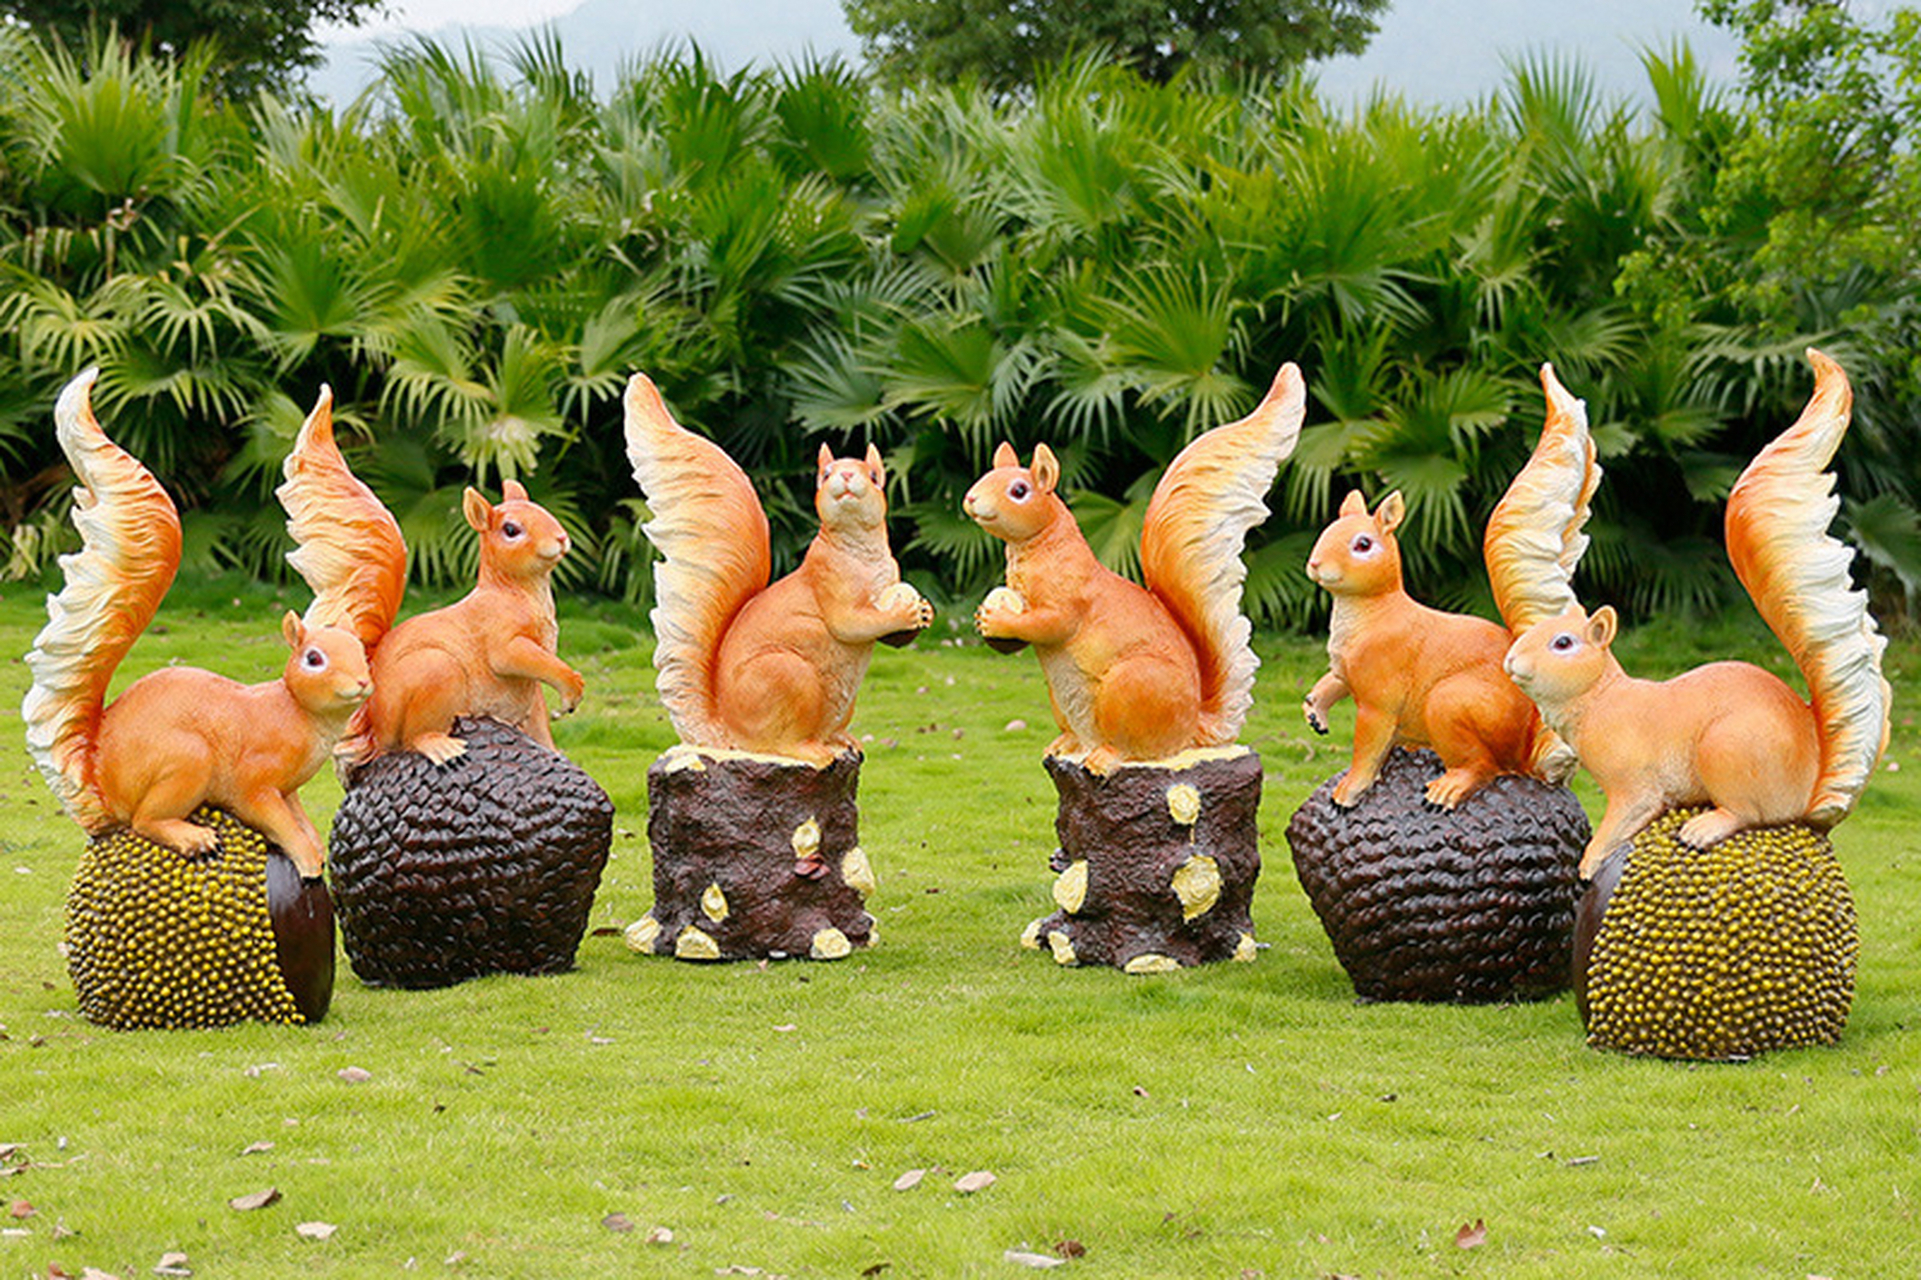 玻璃钢草坪动物造型松鼠仿真户外雕塑设计灵感源于松鼠,以美化环境